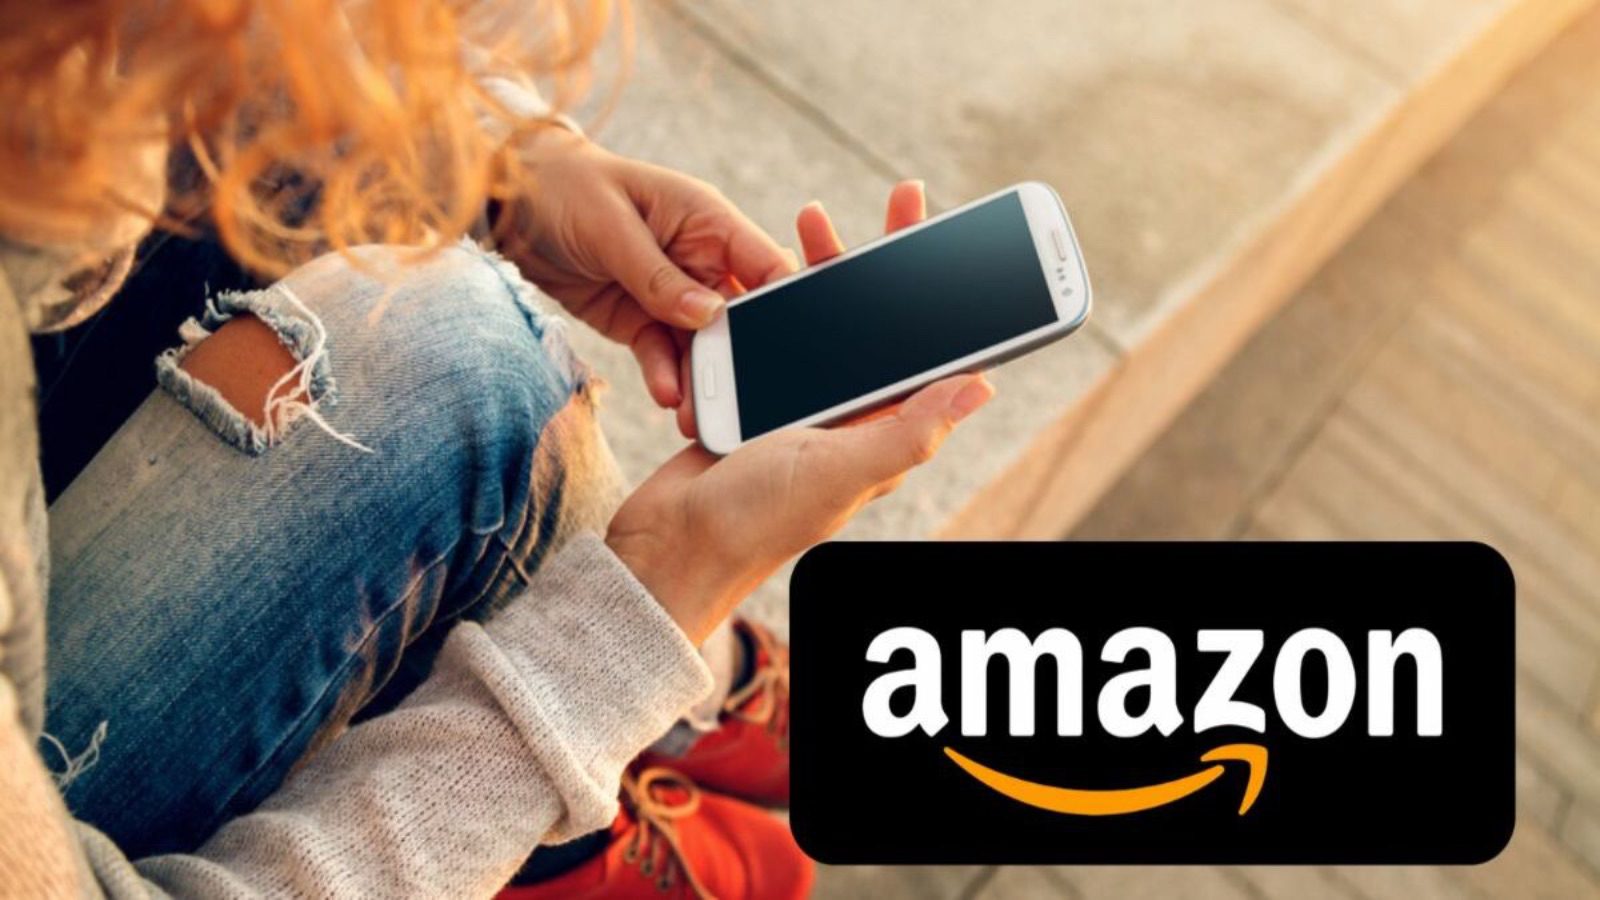 Amazon batte Euronics con offerte folli all'80% di sconto